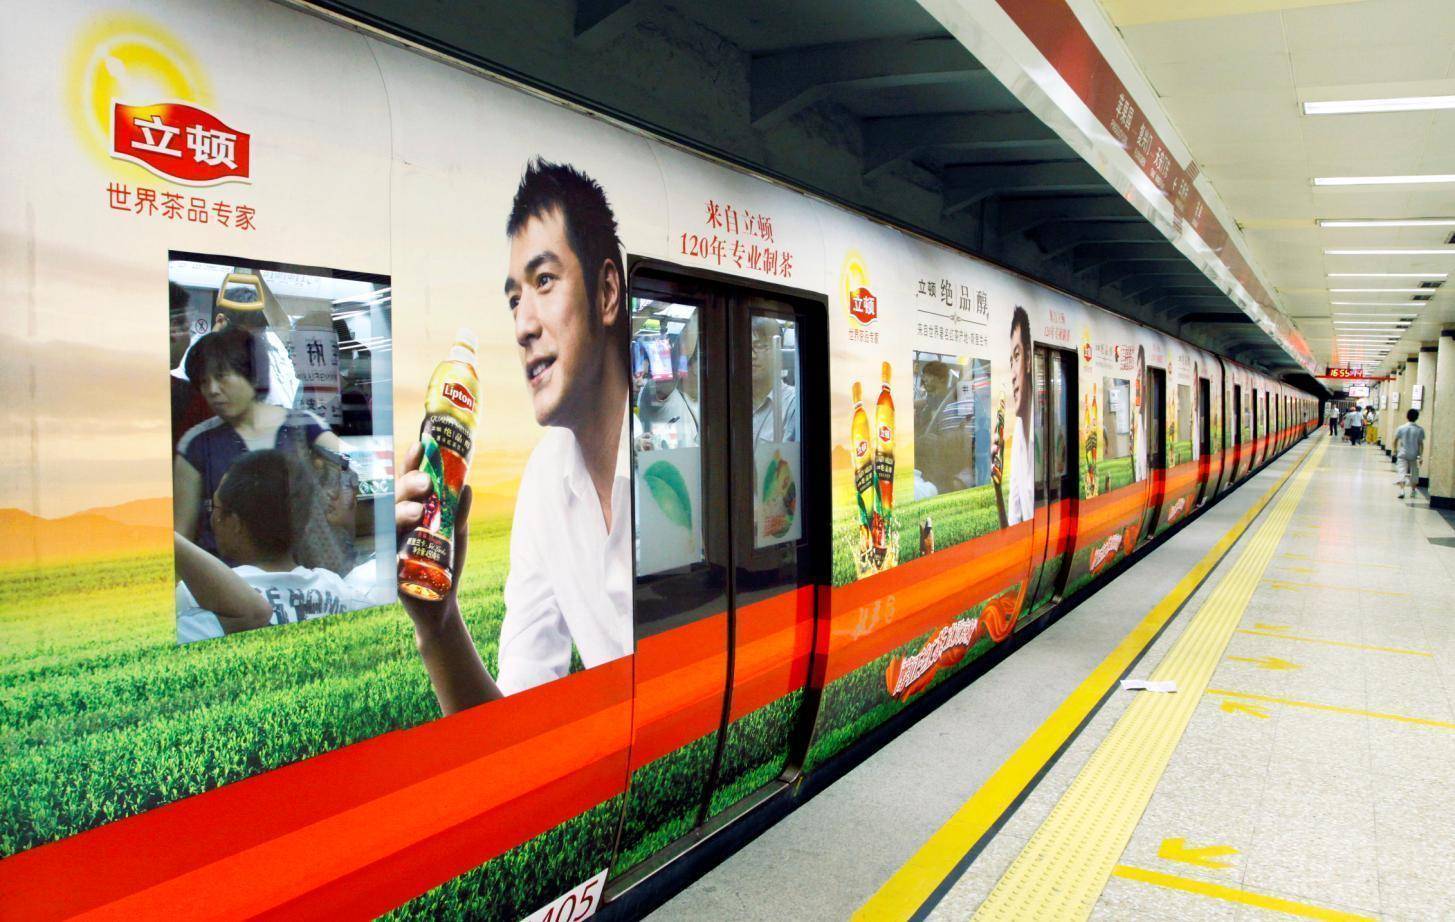 上海地铁车厢广告,上海地铁3号线车厢广告,上海地铁3号线包车广告,天赐传媒